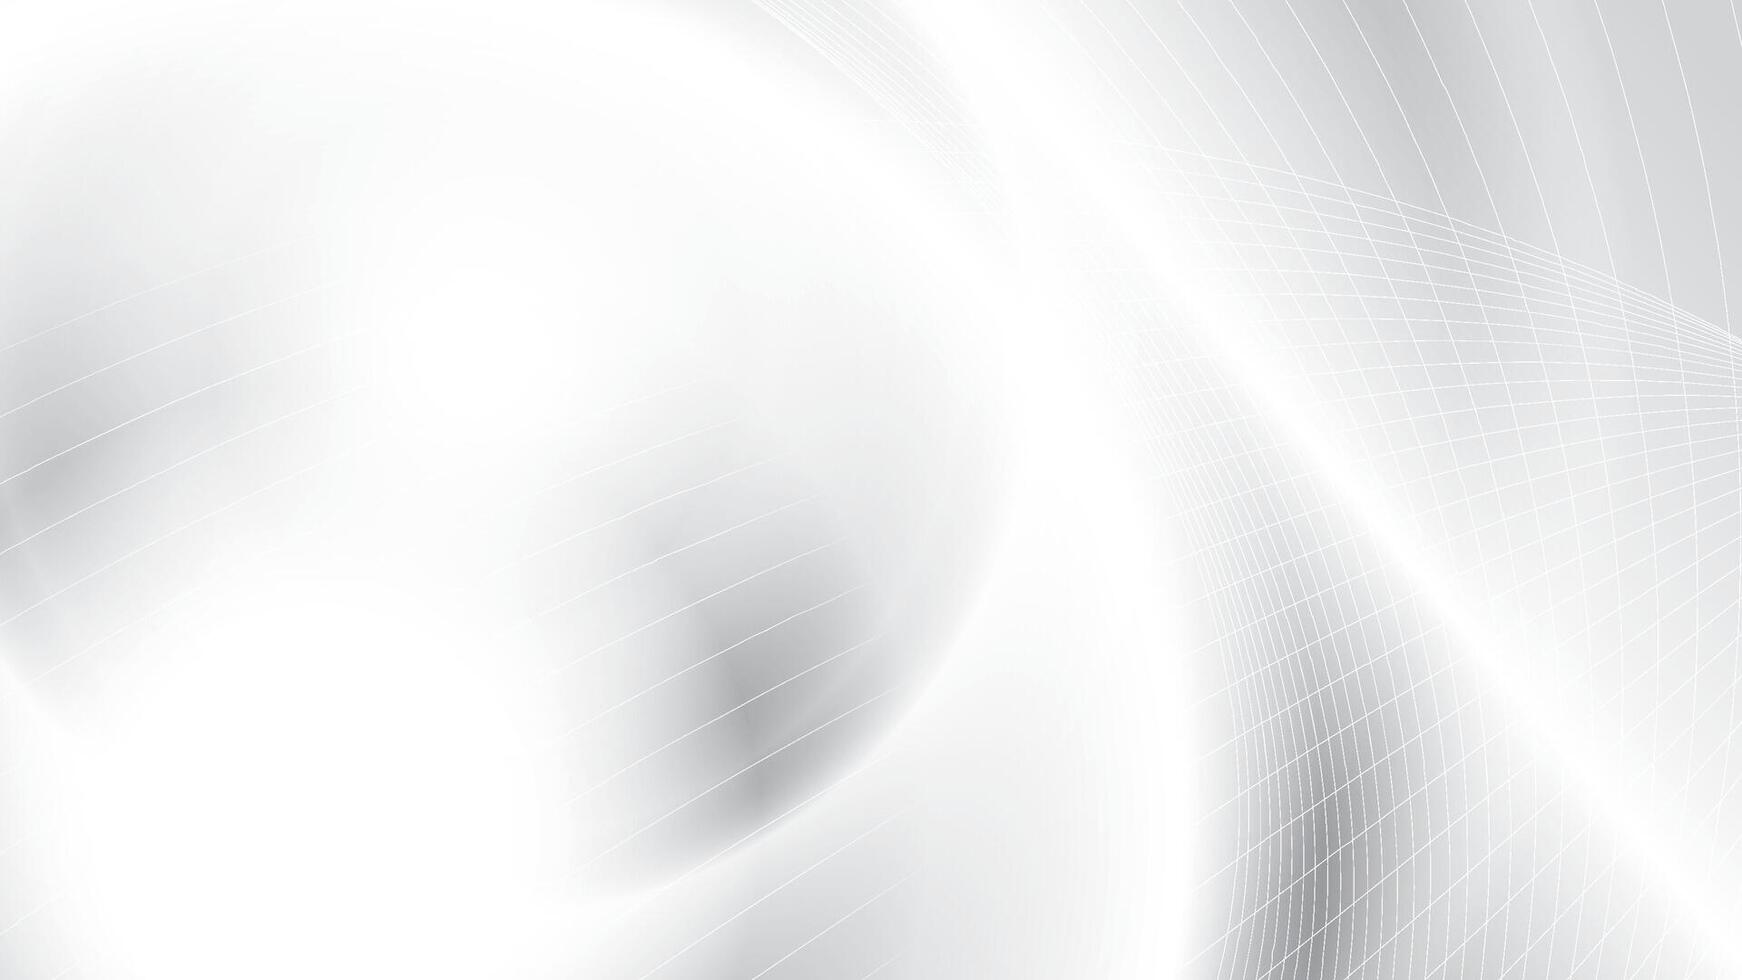 abstrakt Weiß und grau Farbe, modern Design Streifen Hintergrund mit Kurve Linie Muster. Vektor Illustration.